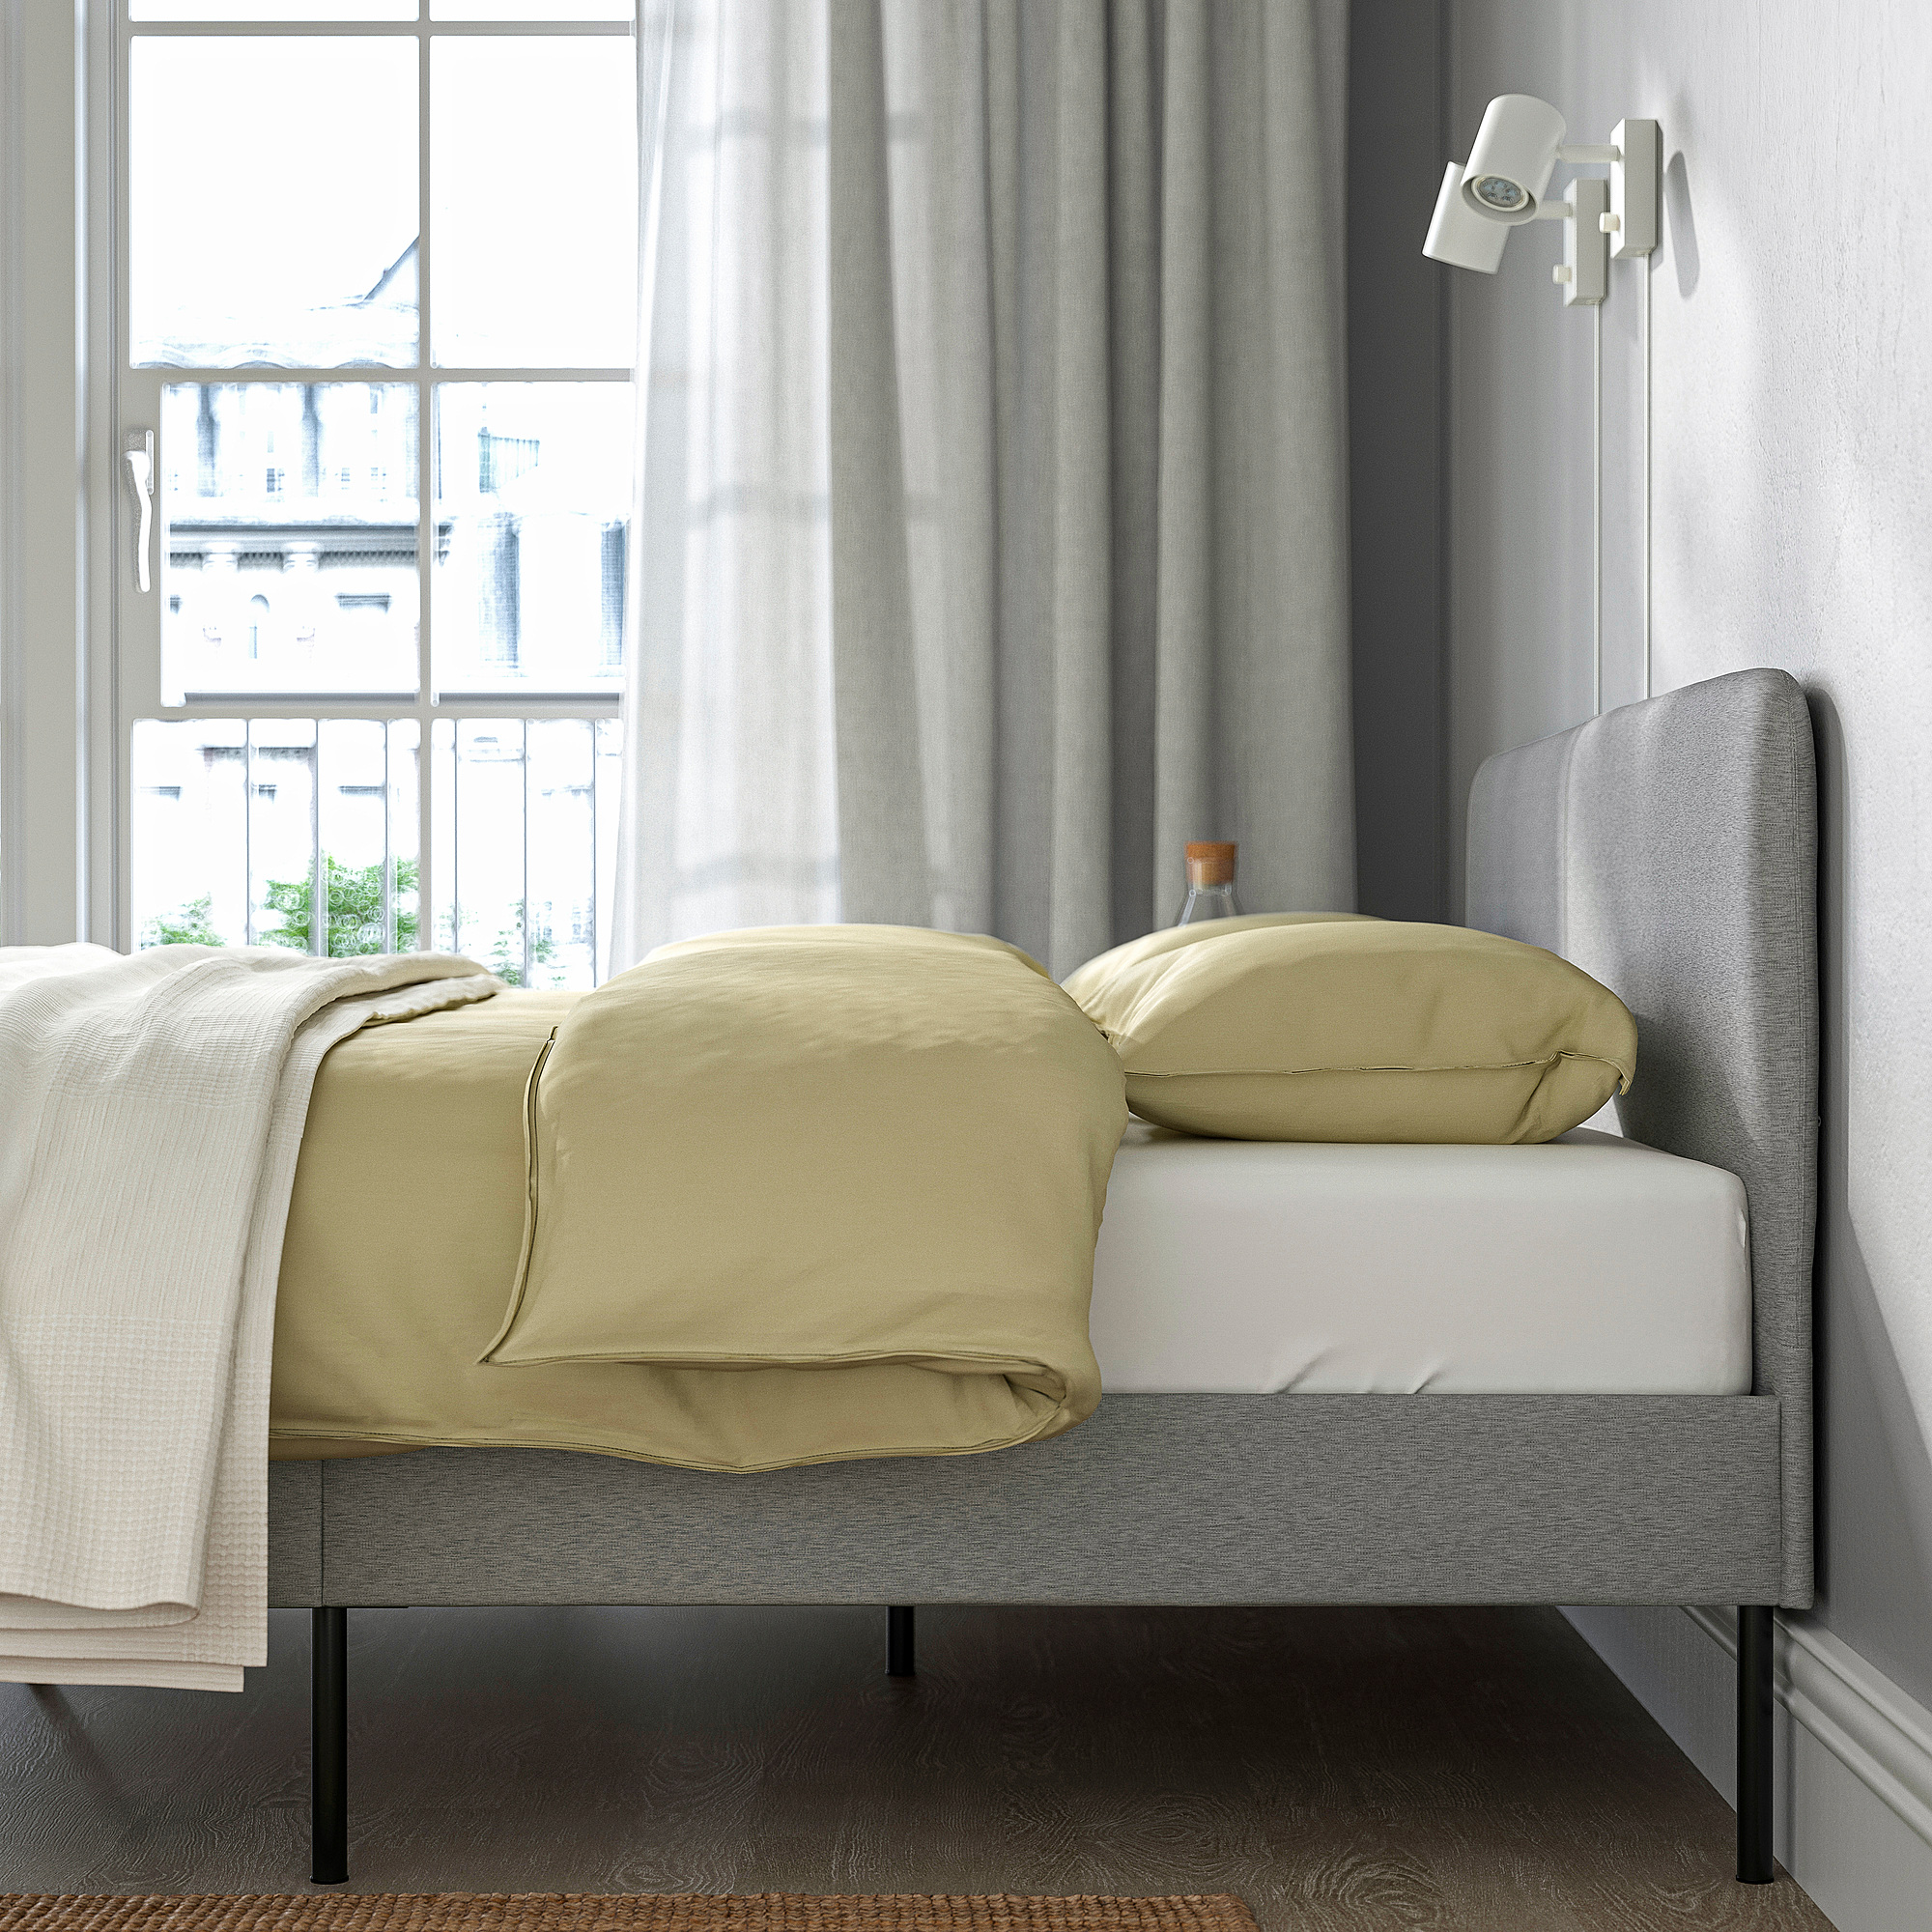 SLATTUM/KULLEN bedroom furniture, set of 4